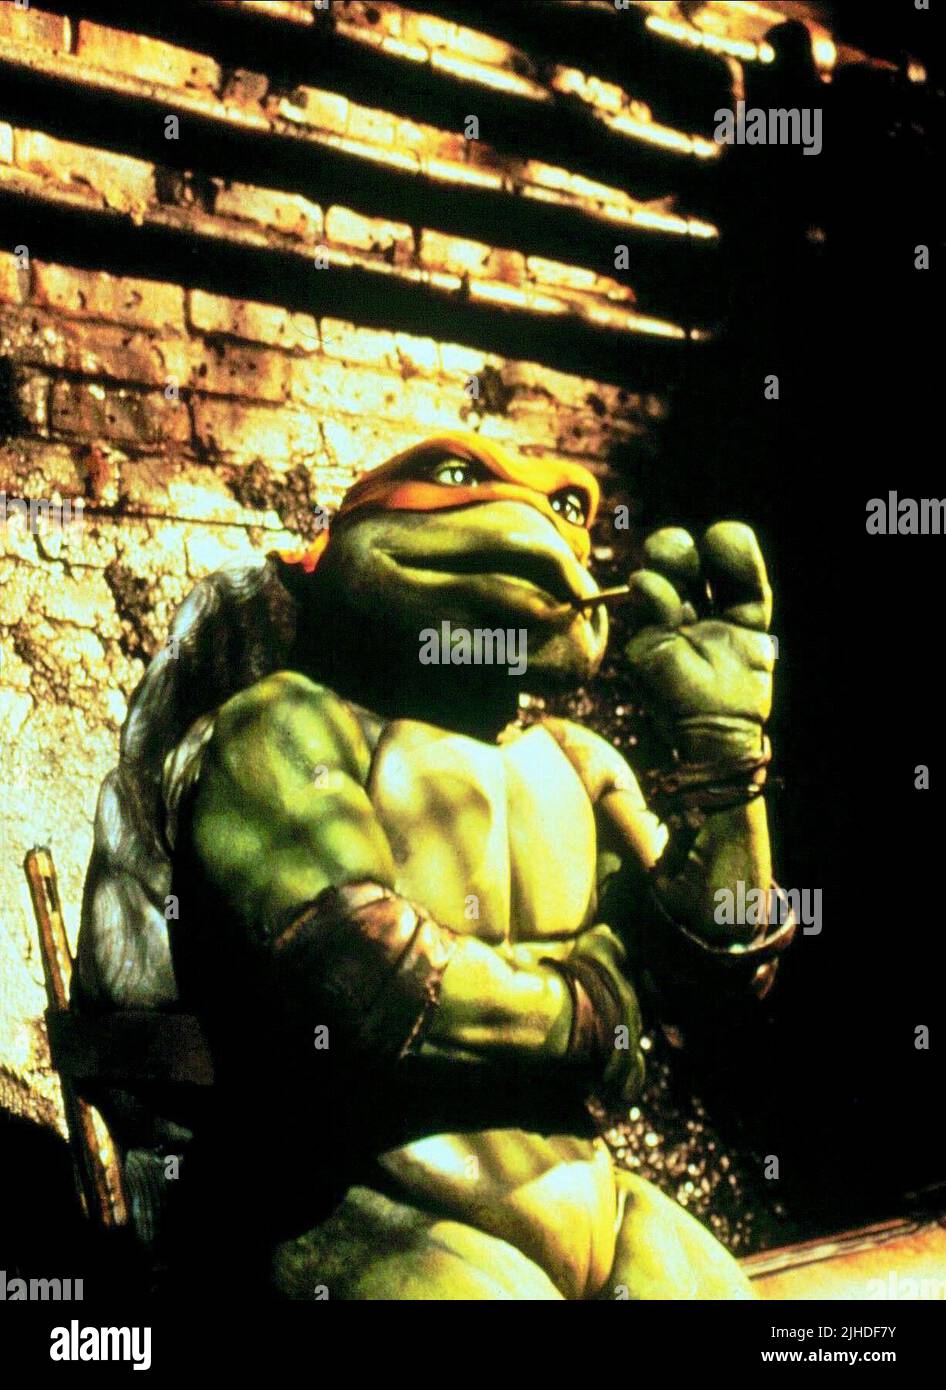 https://c8.alamy.com/comp/2JHDF7Y/michelangelo-teenage-mutant-ninja-turtles-1990-2JHDF7Y.jpg